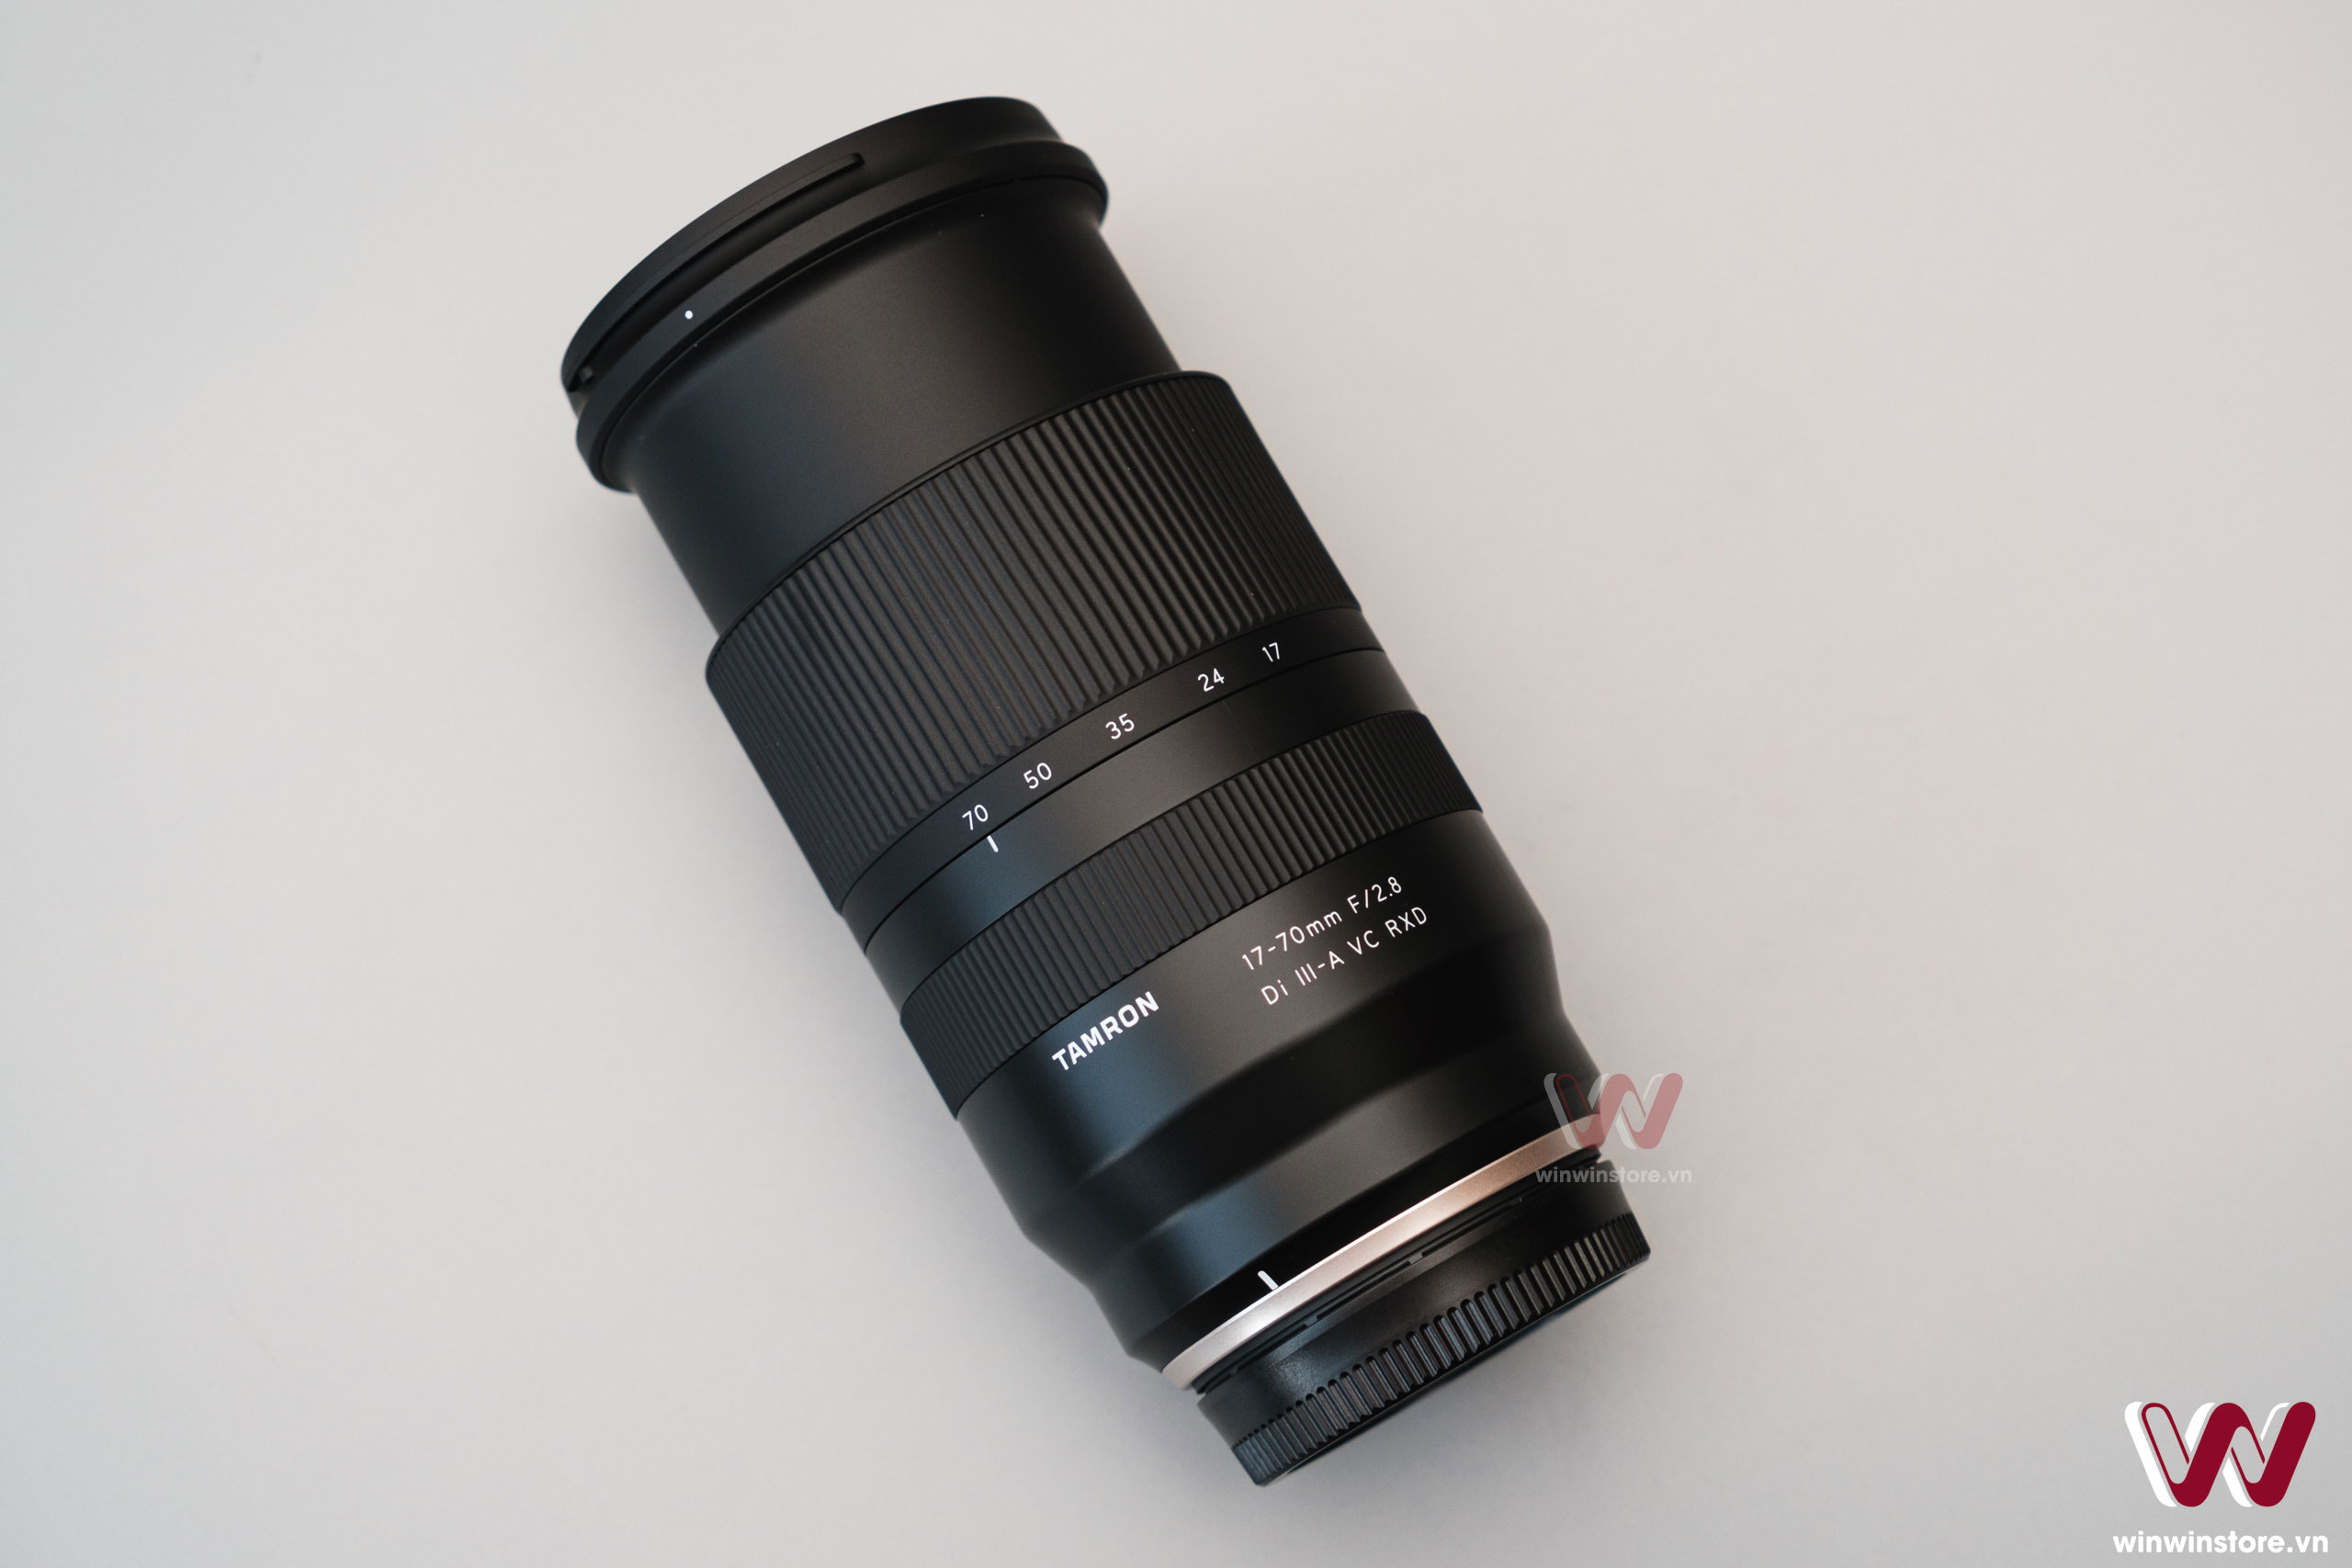 Trên tay ống kính Tamron 17–70mm F2.8 Di III-A VC RXD cho Fujifilm: Tiêu cự rất đa dụng và linh hoạt, khẩu độ F2.8 toàn dải